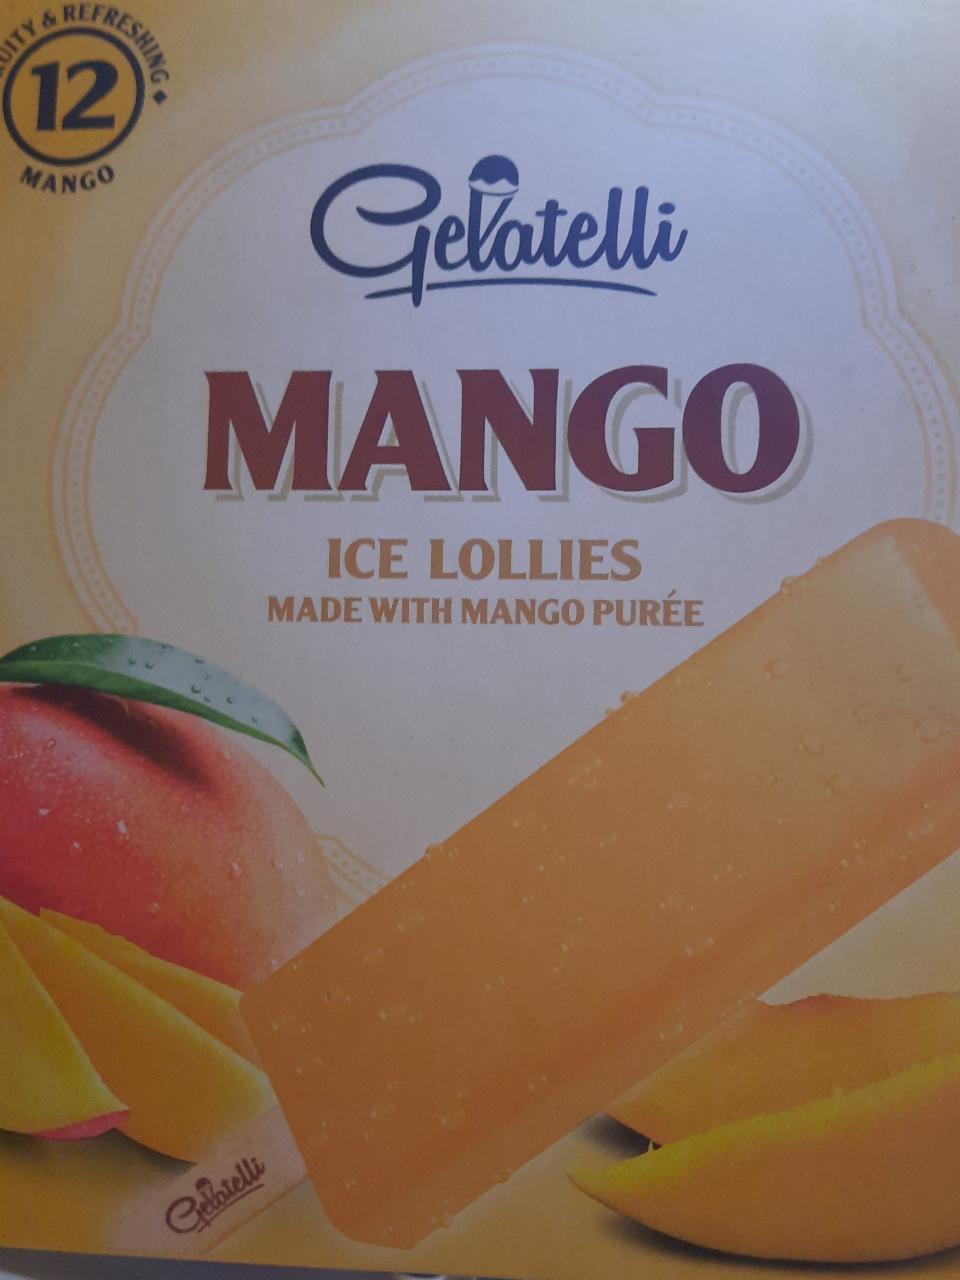 Zdjęcia - lody Gelatelli Mango 